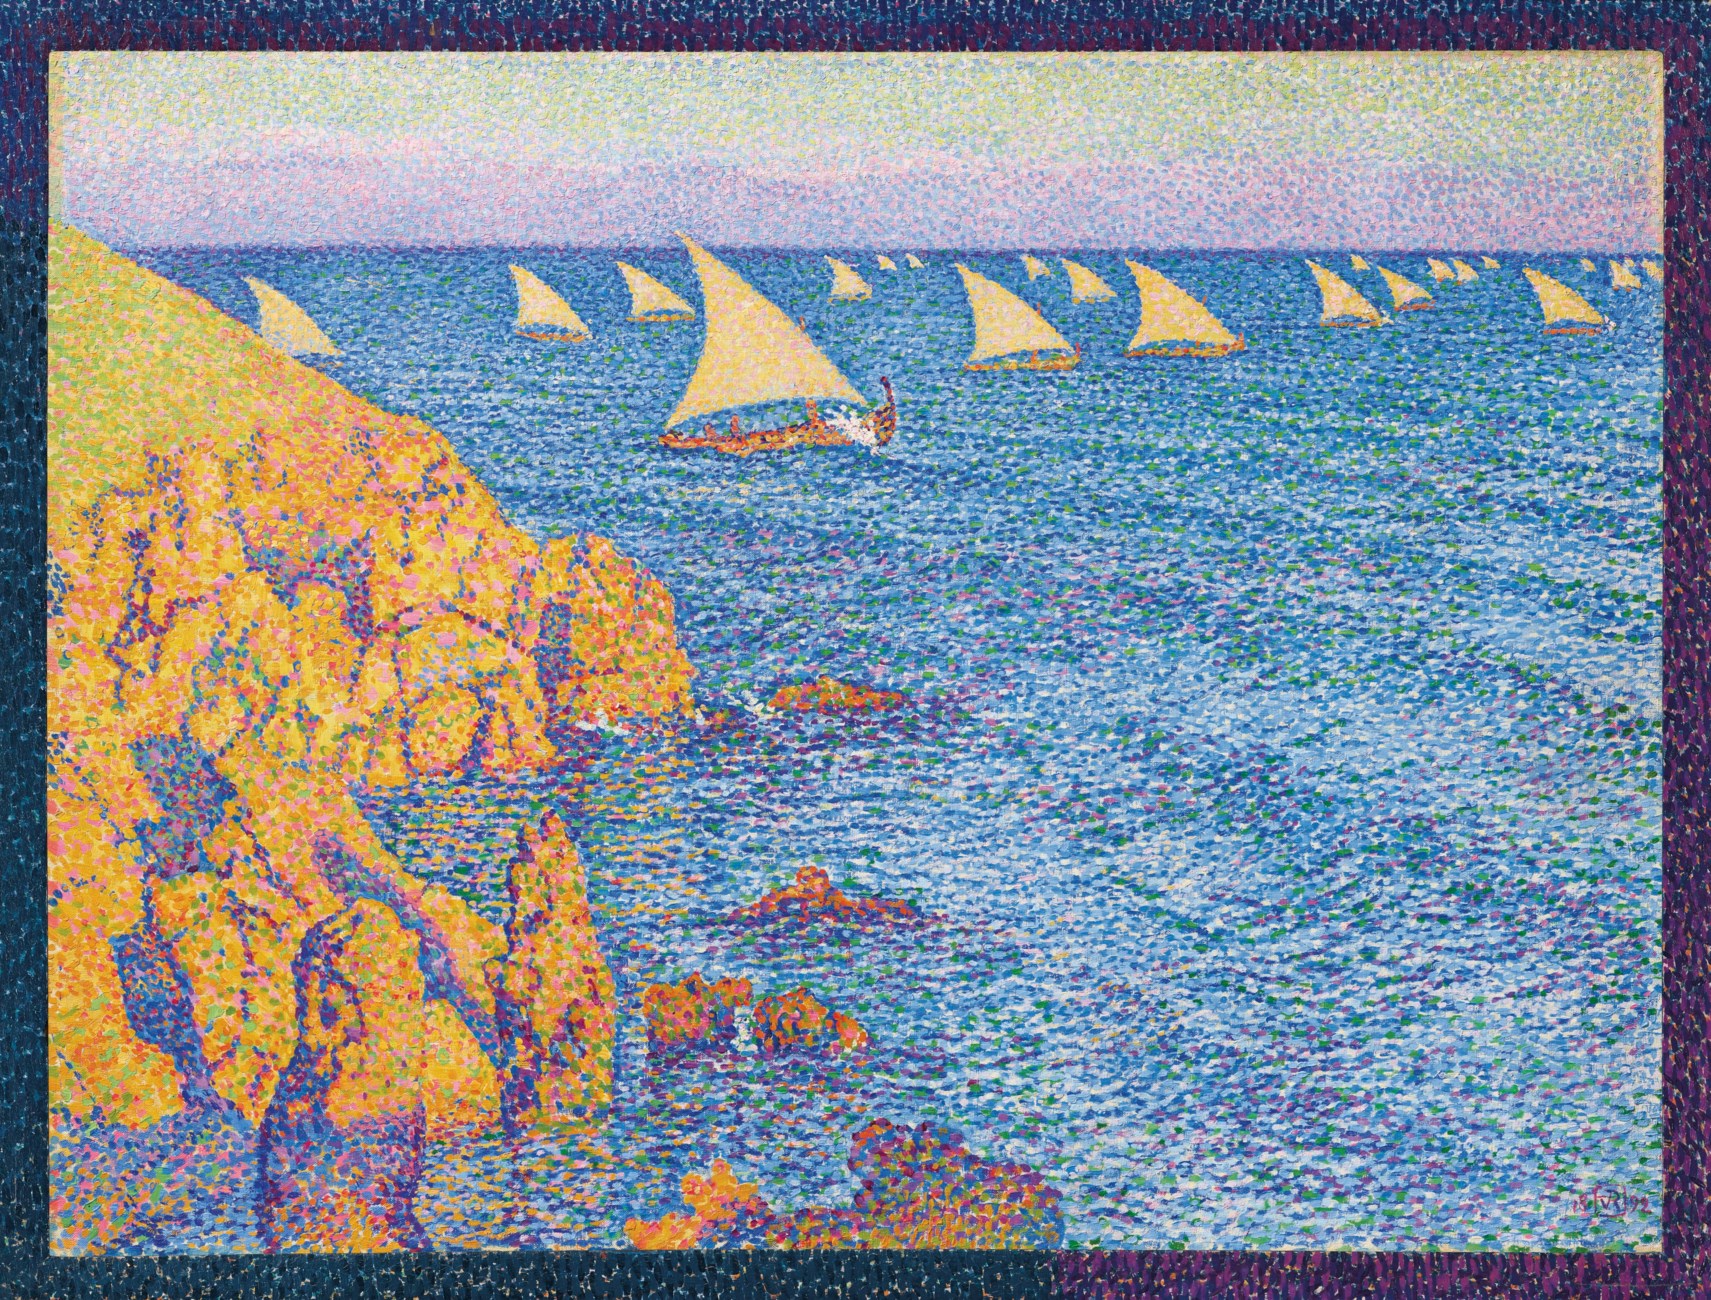 La regata by Theo van Rysselberghe - 1892 - 63 x 84 cm collezione privata